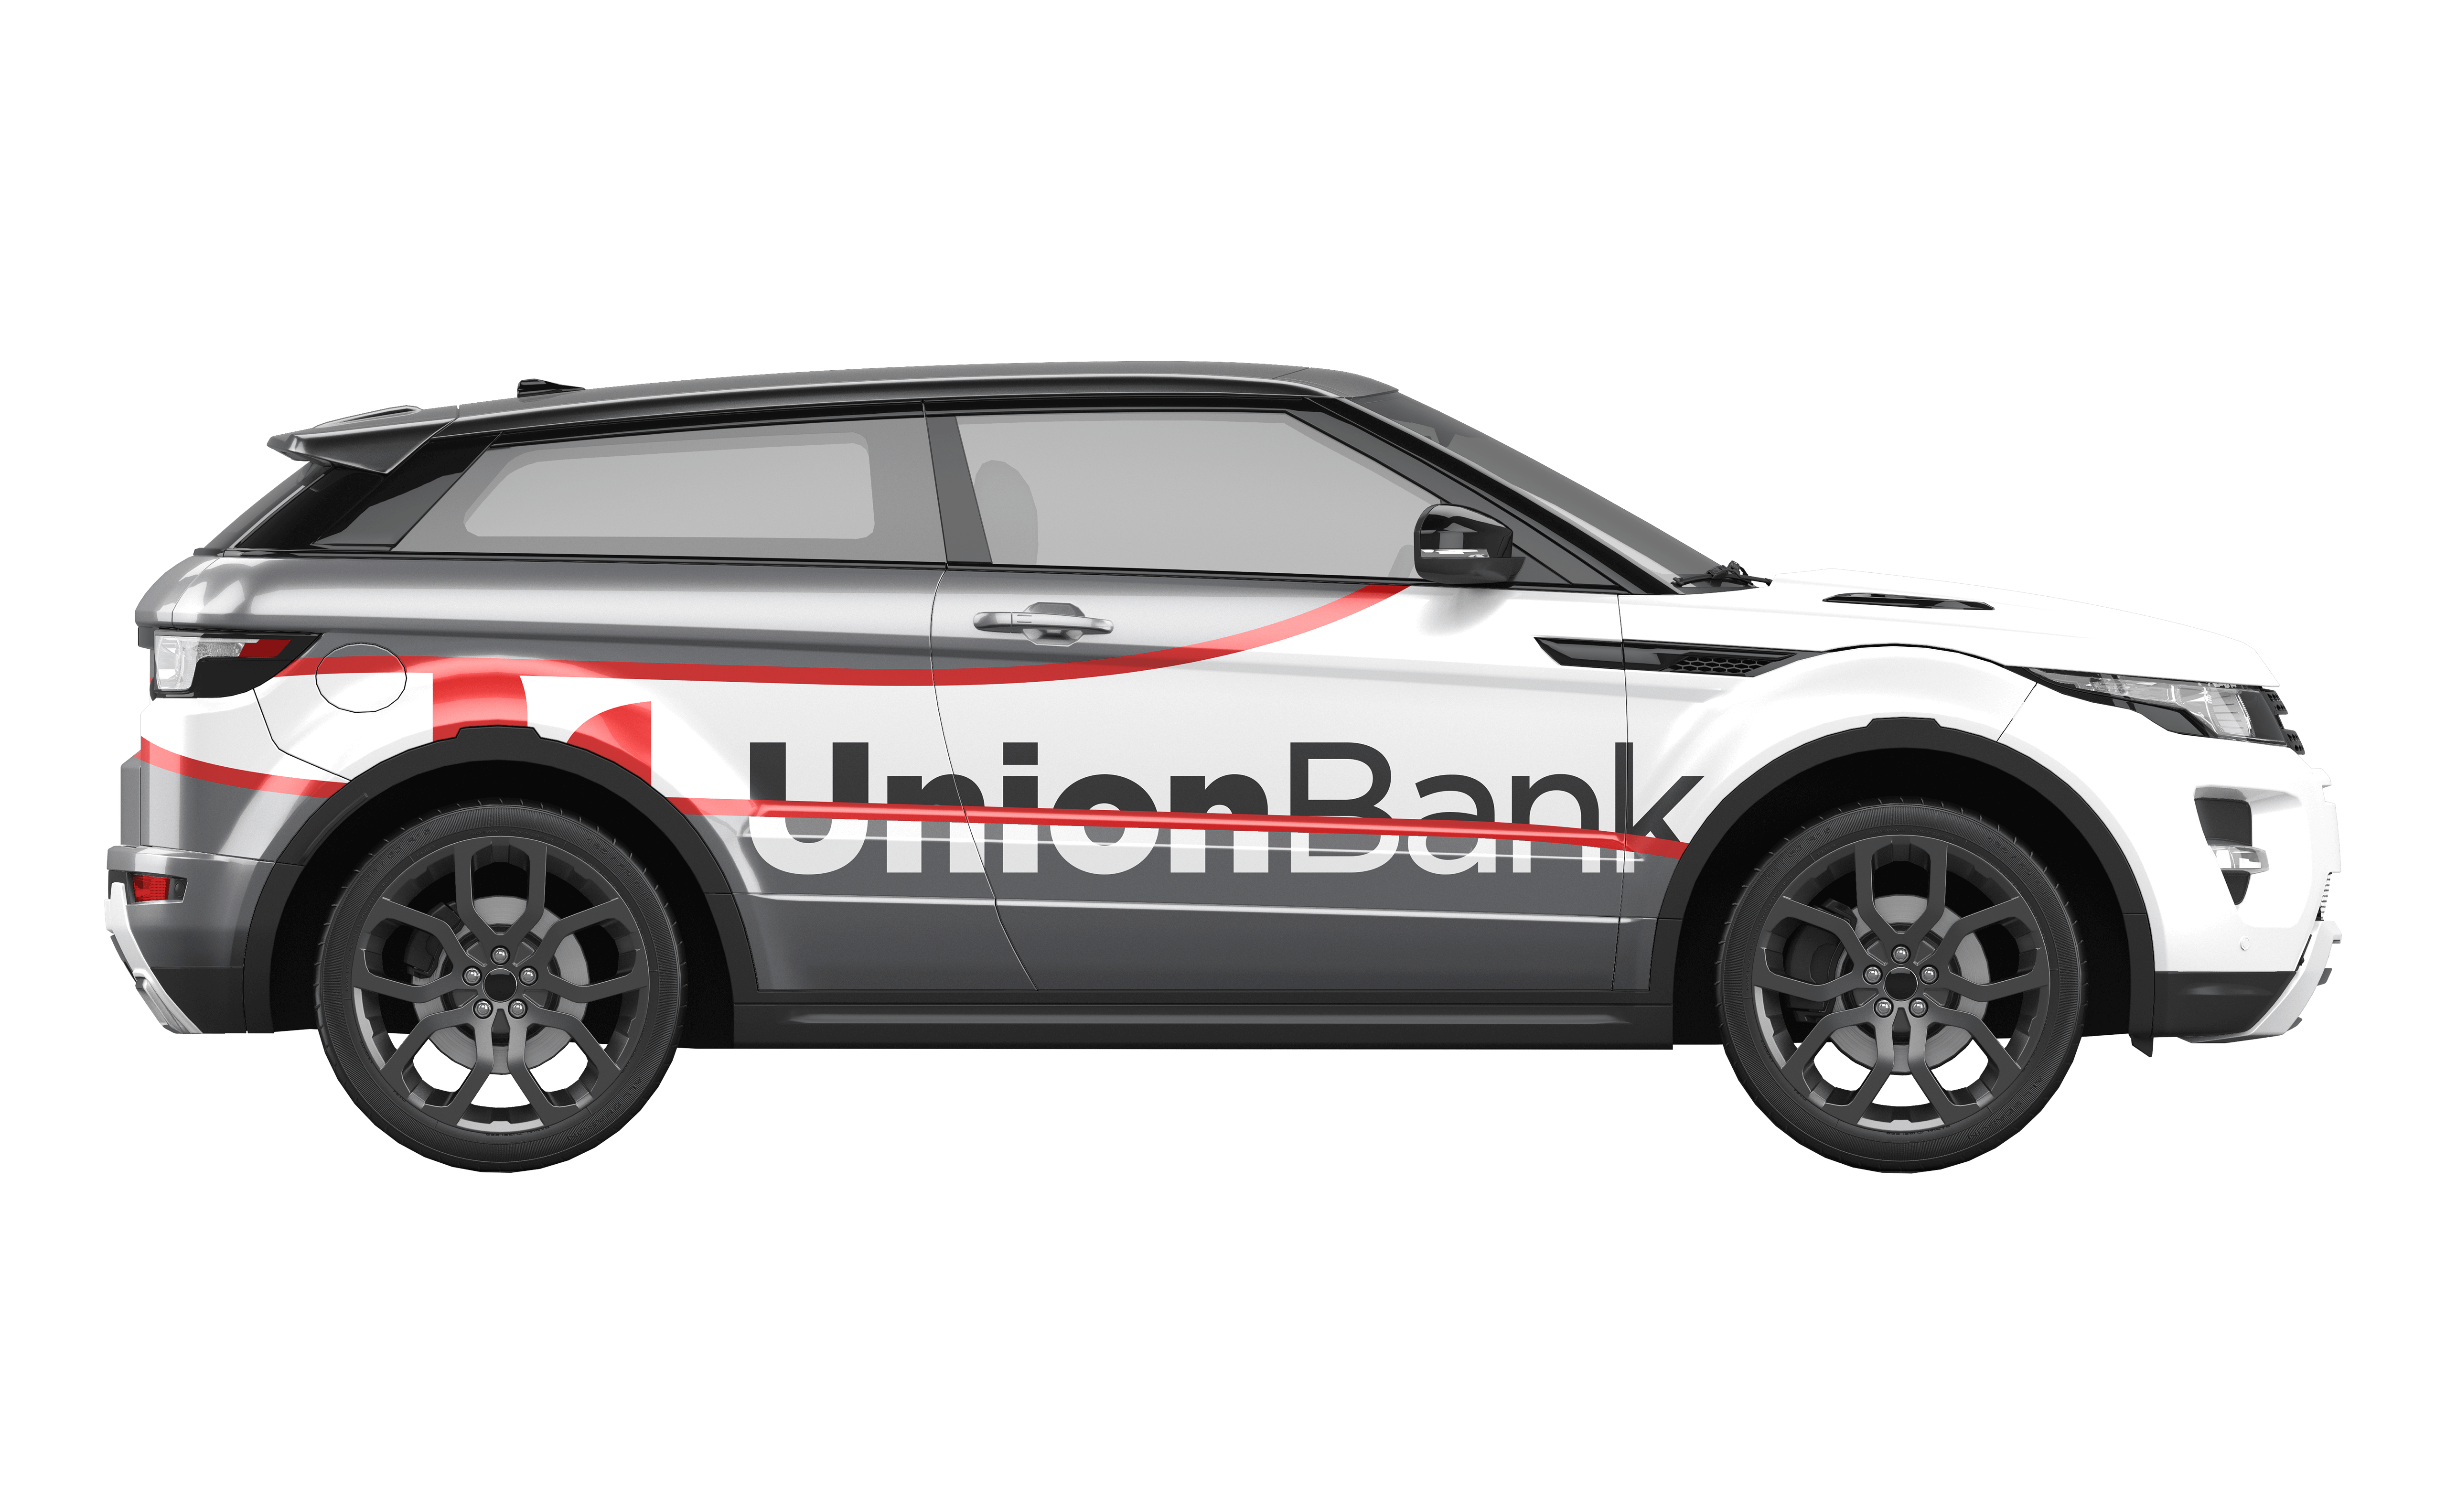 Union Bank Car Wrap